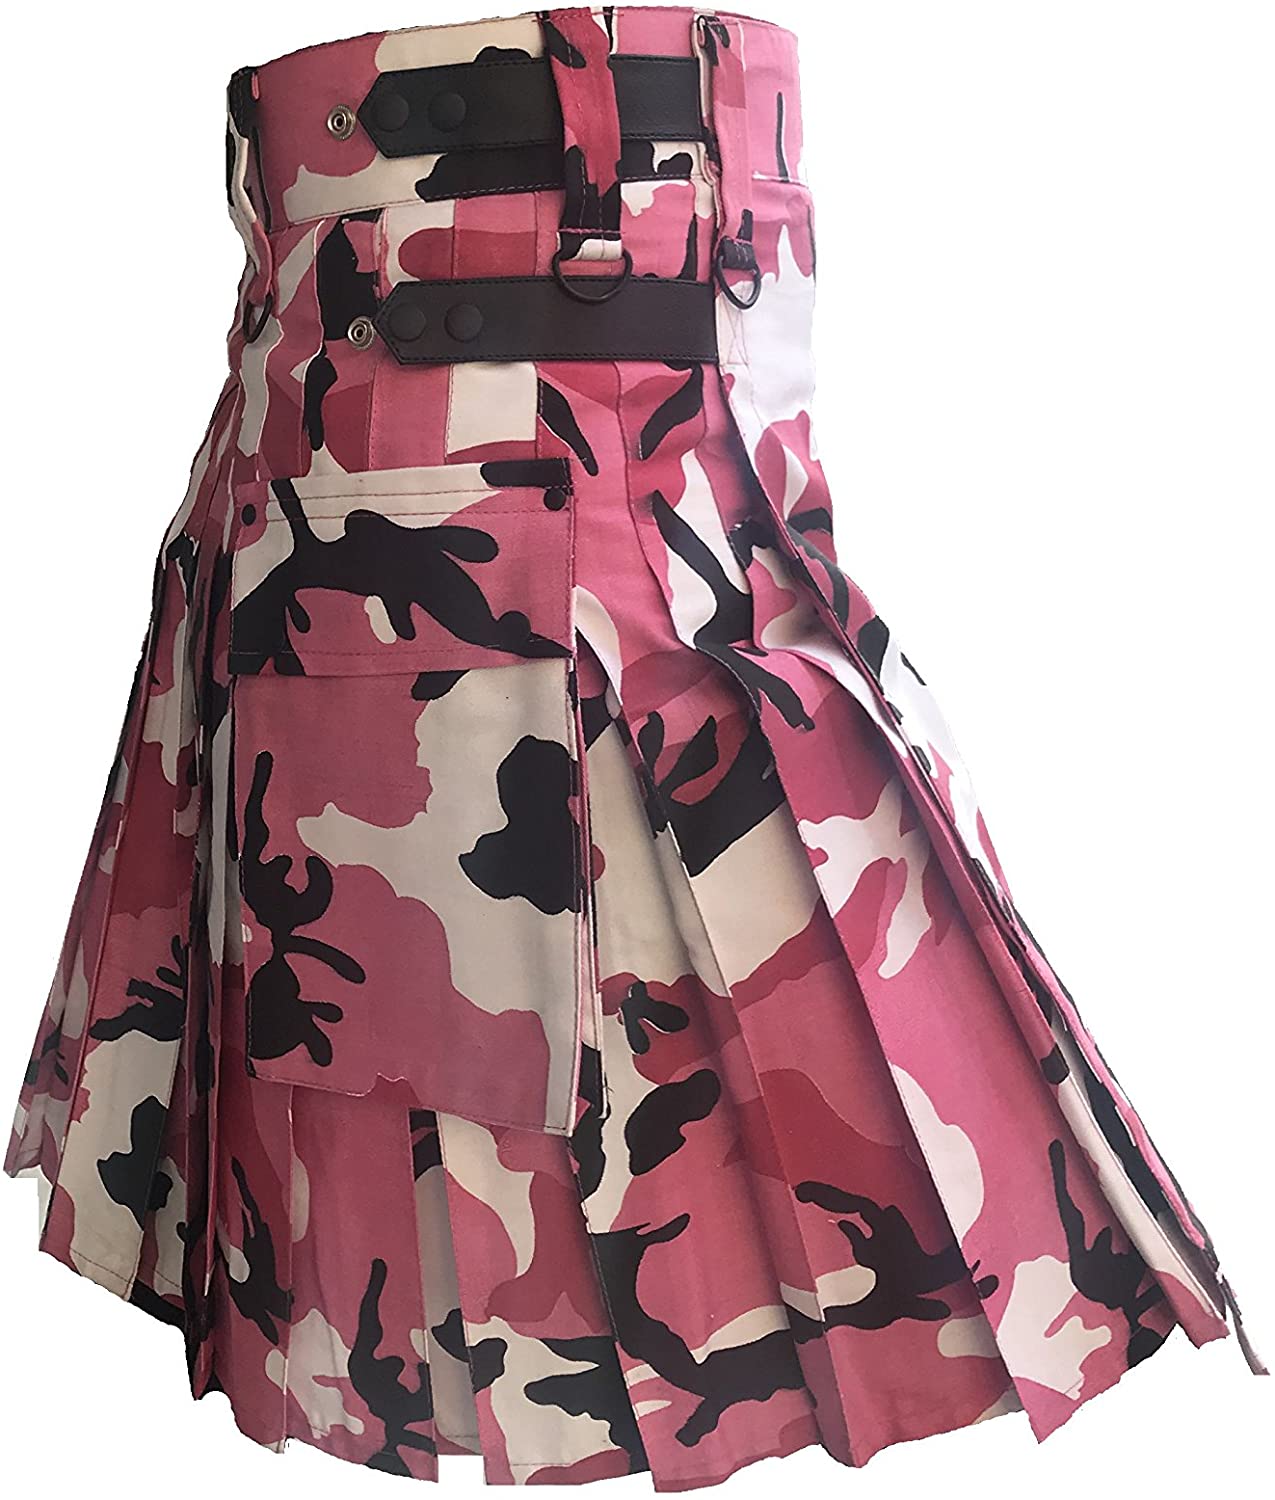 Pink Camouflage Cotton Utility Kilt, Fashion Sport Utility Kilt Leather Straps